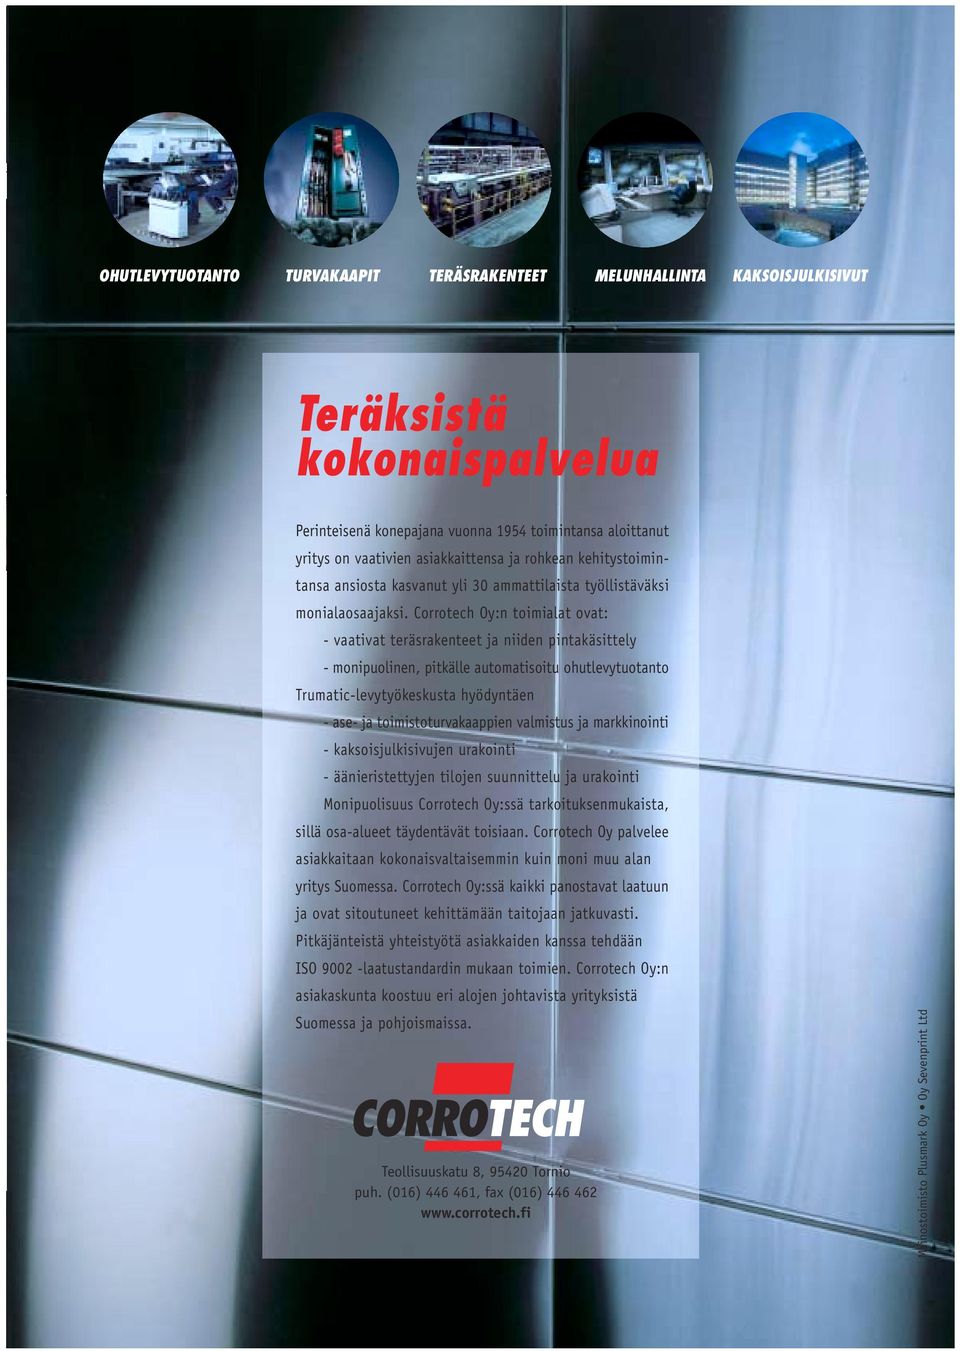 Corrotech Oy:n toimialat ovat: - vaativat teräsrakenteet ja niiden pintakäsittely - monipuolinen, pitkälle automatisoitu ohutlevytuotanto Trumatic-levytyökeskusta hyödyntäen - ase- ja